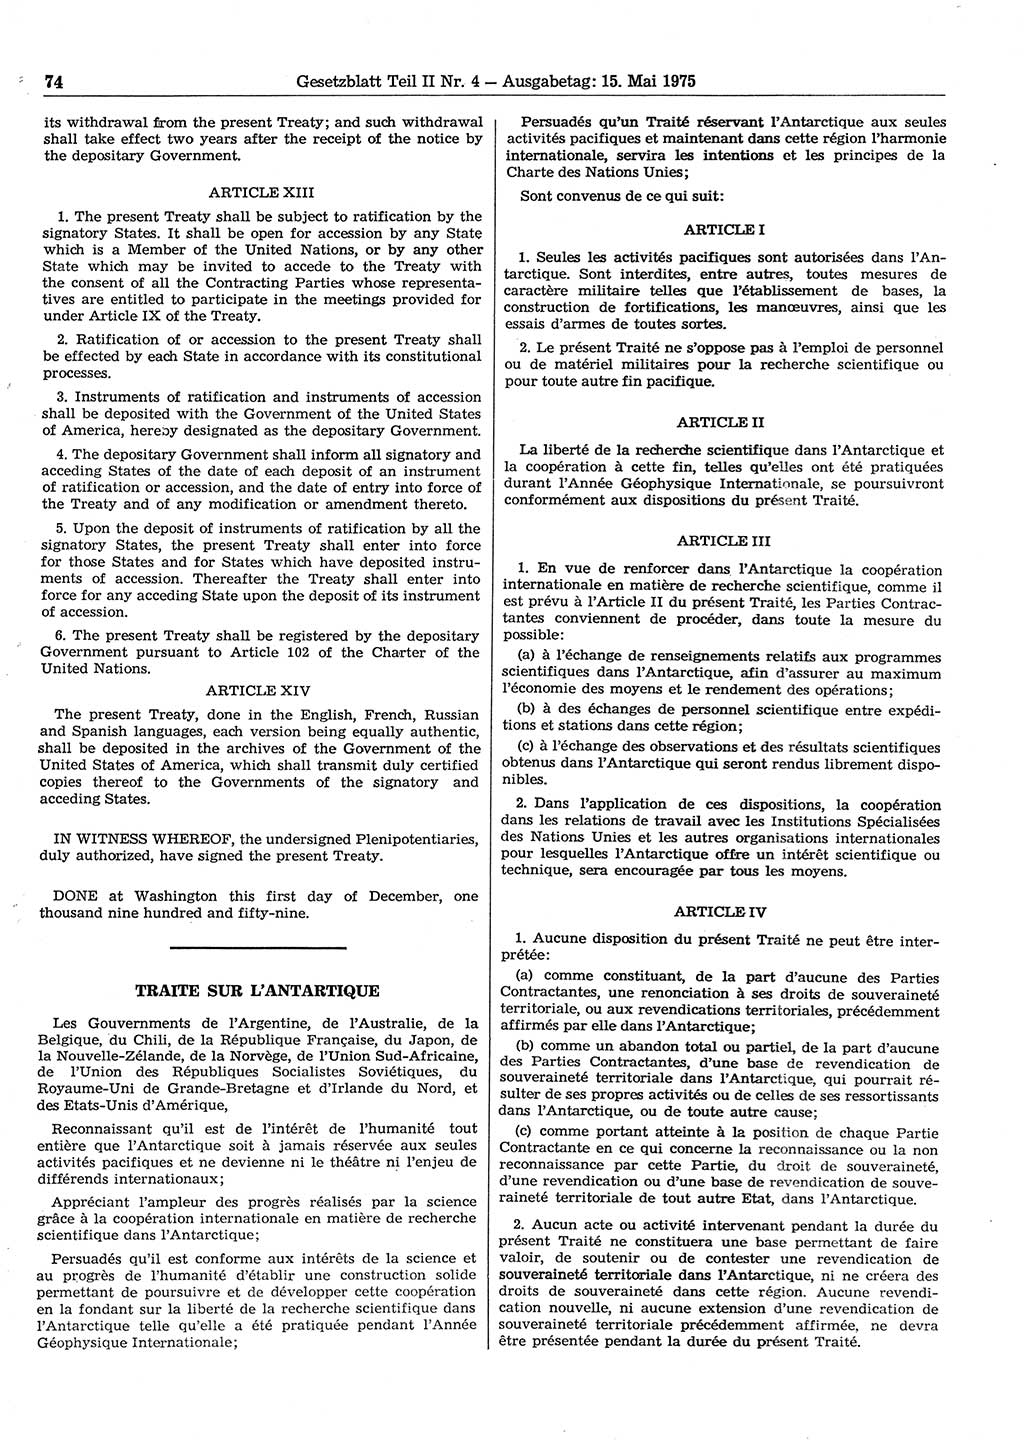 Gesetzblatt (GBl.) der Deutschen Demokratischen Republik (DDR) Teil ⅠⅠ 1975, Seite 74 (GBl. DDR ⅠⅠ 1975, S. 74)